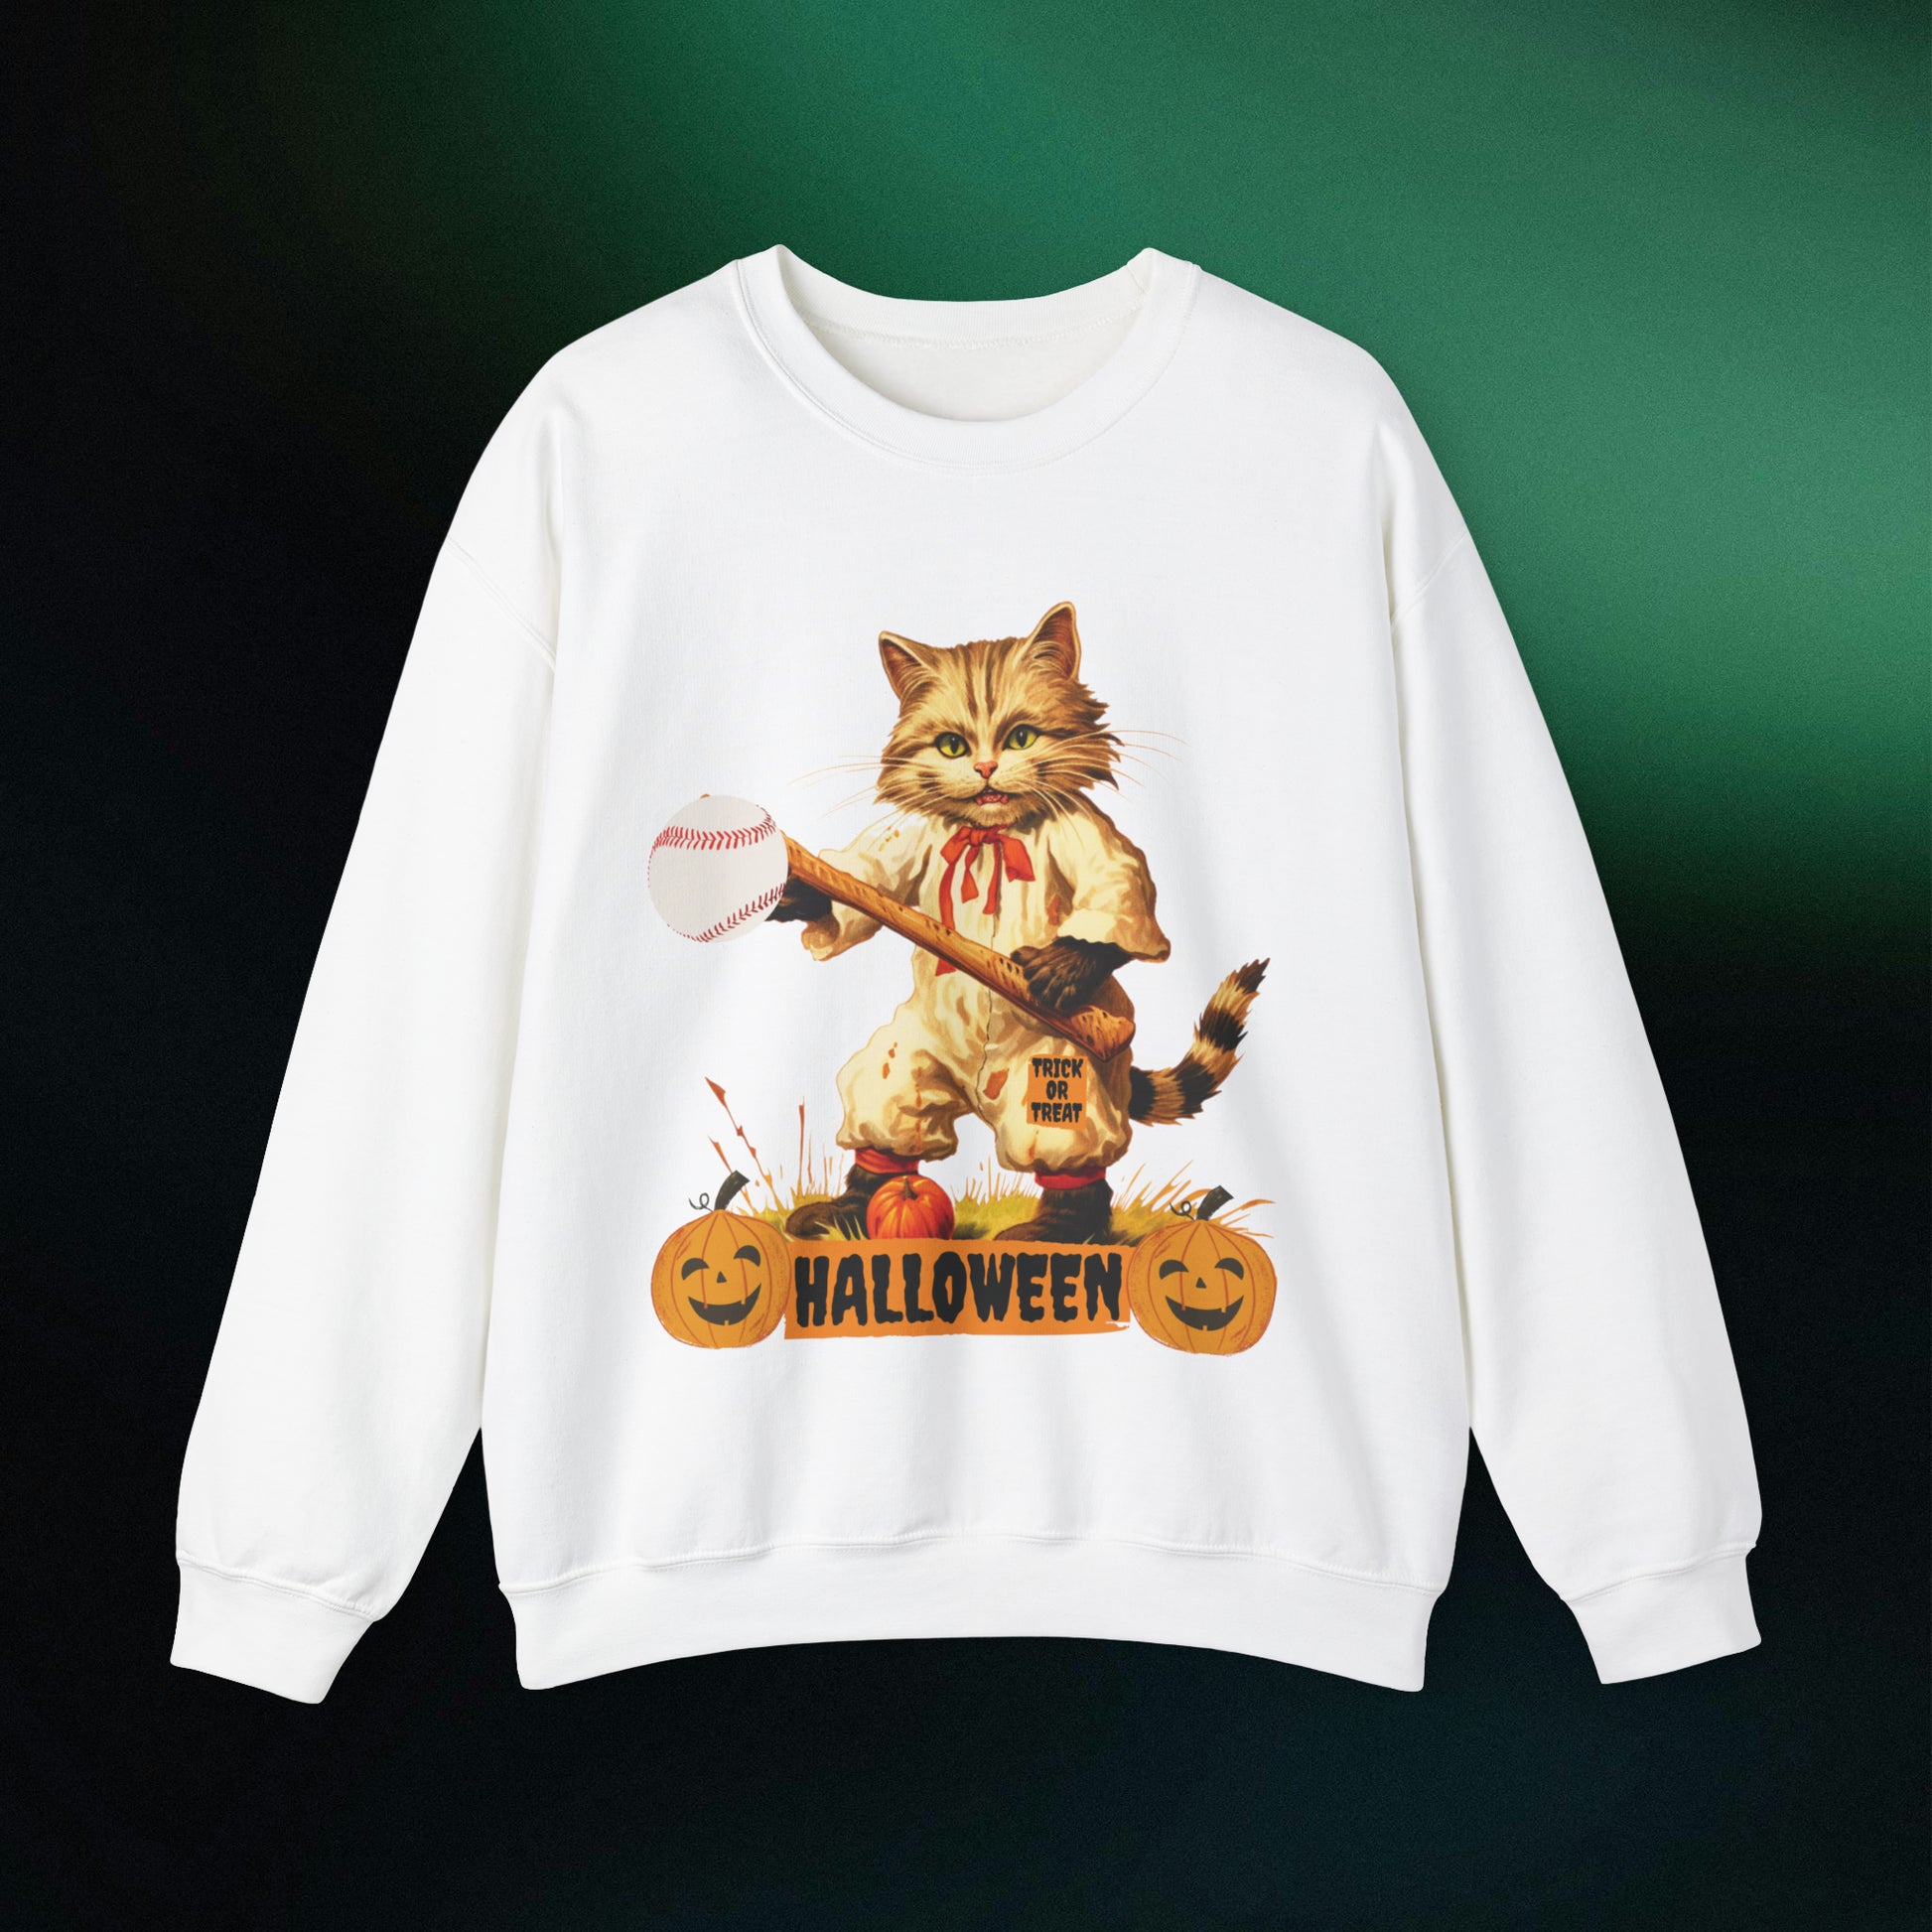 Halloween Cat Baseball Sweatshirt | Happy Halloween - Spooky Sports | Halloween Fun Sweatshirt Sweatshirt S White 